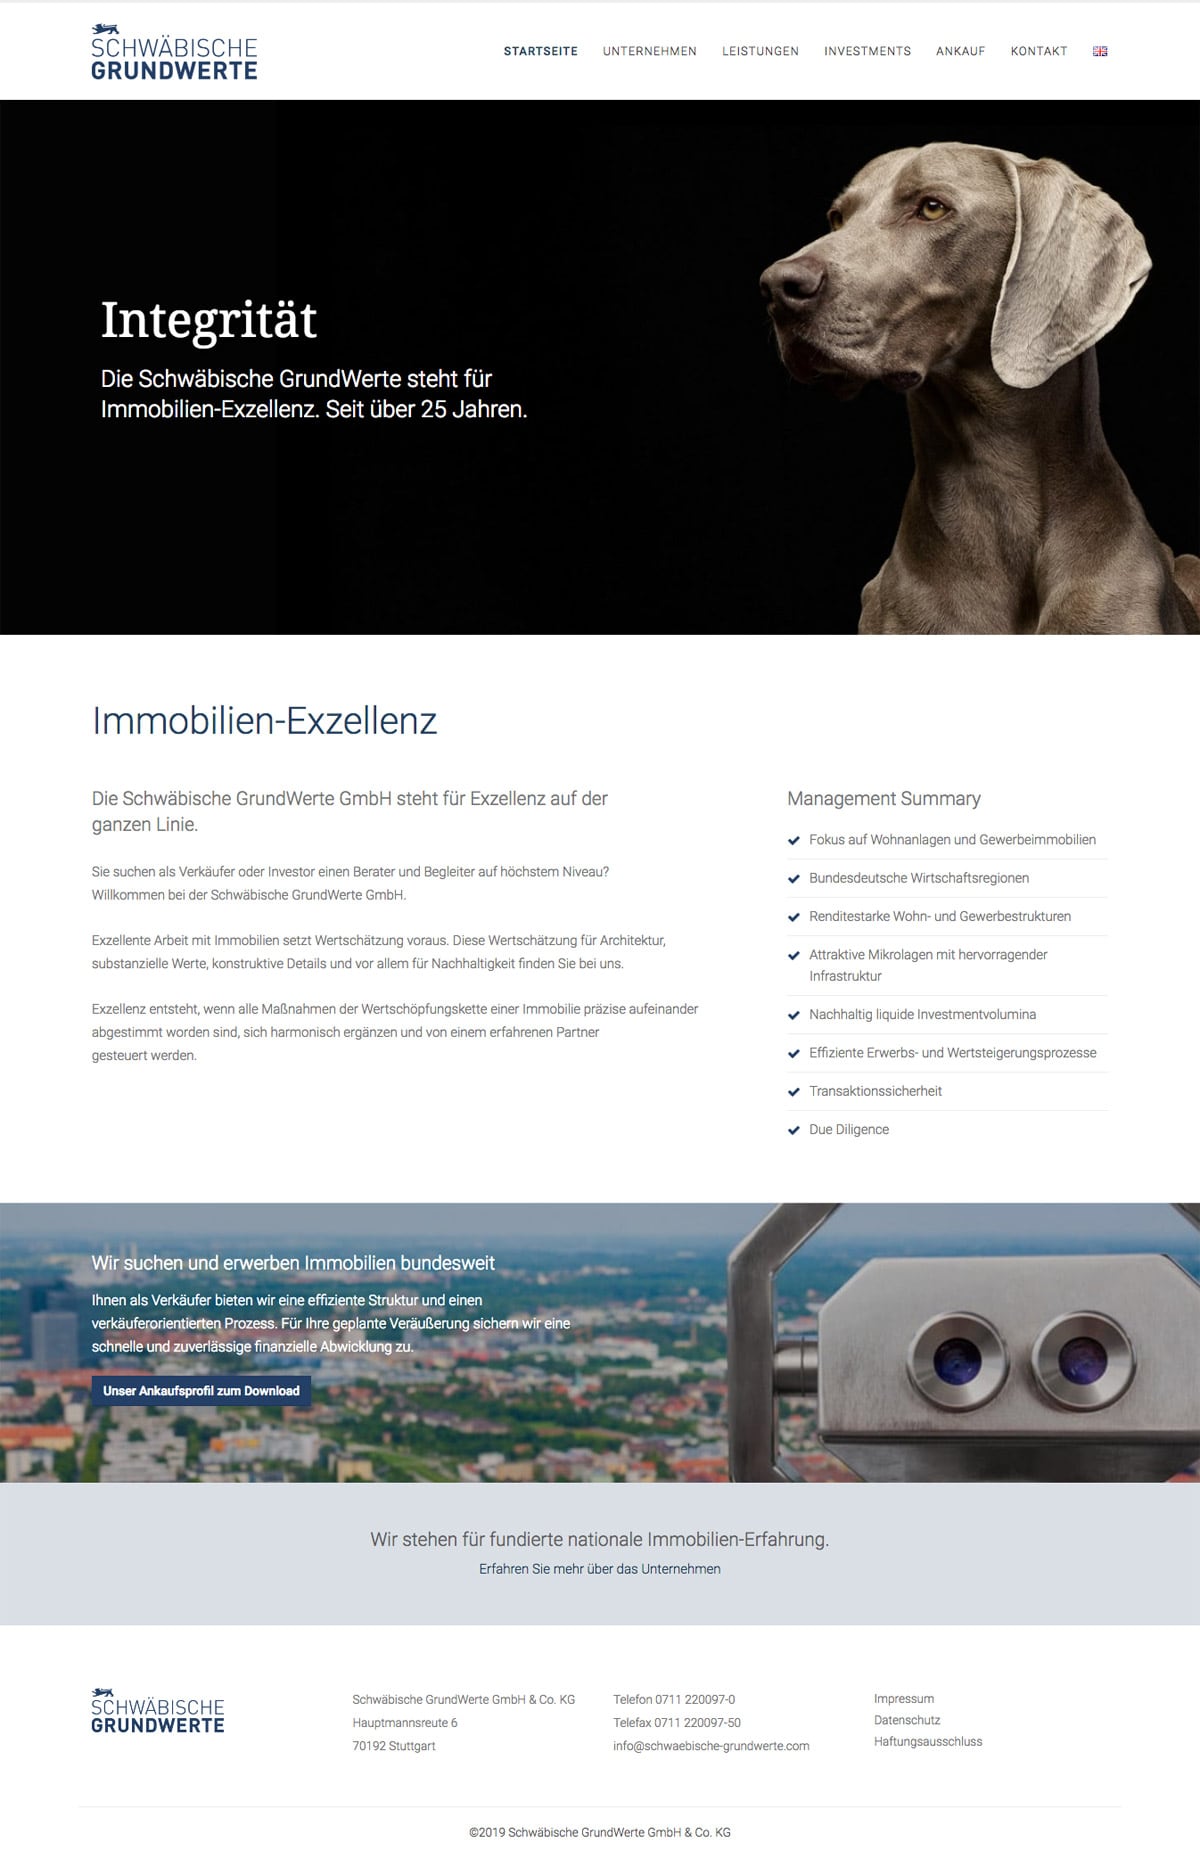 Website für Schwäbische Grundwerte GmbH & Co. KG